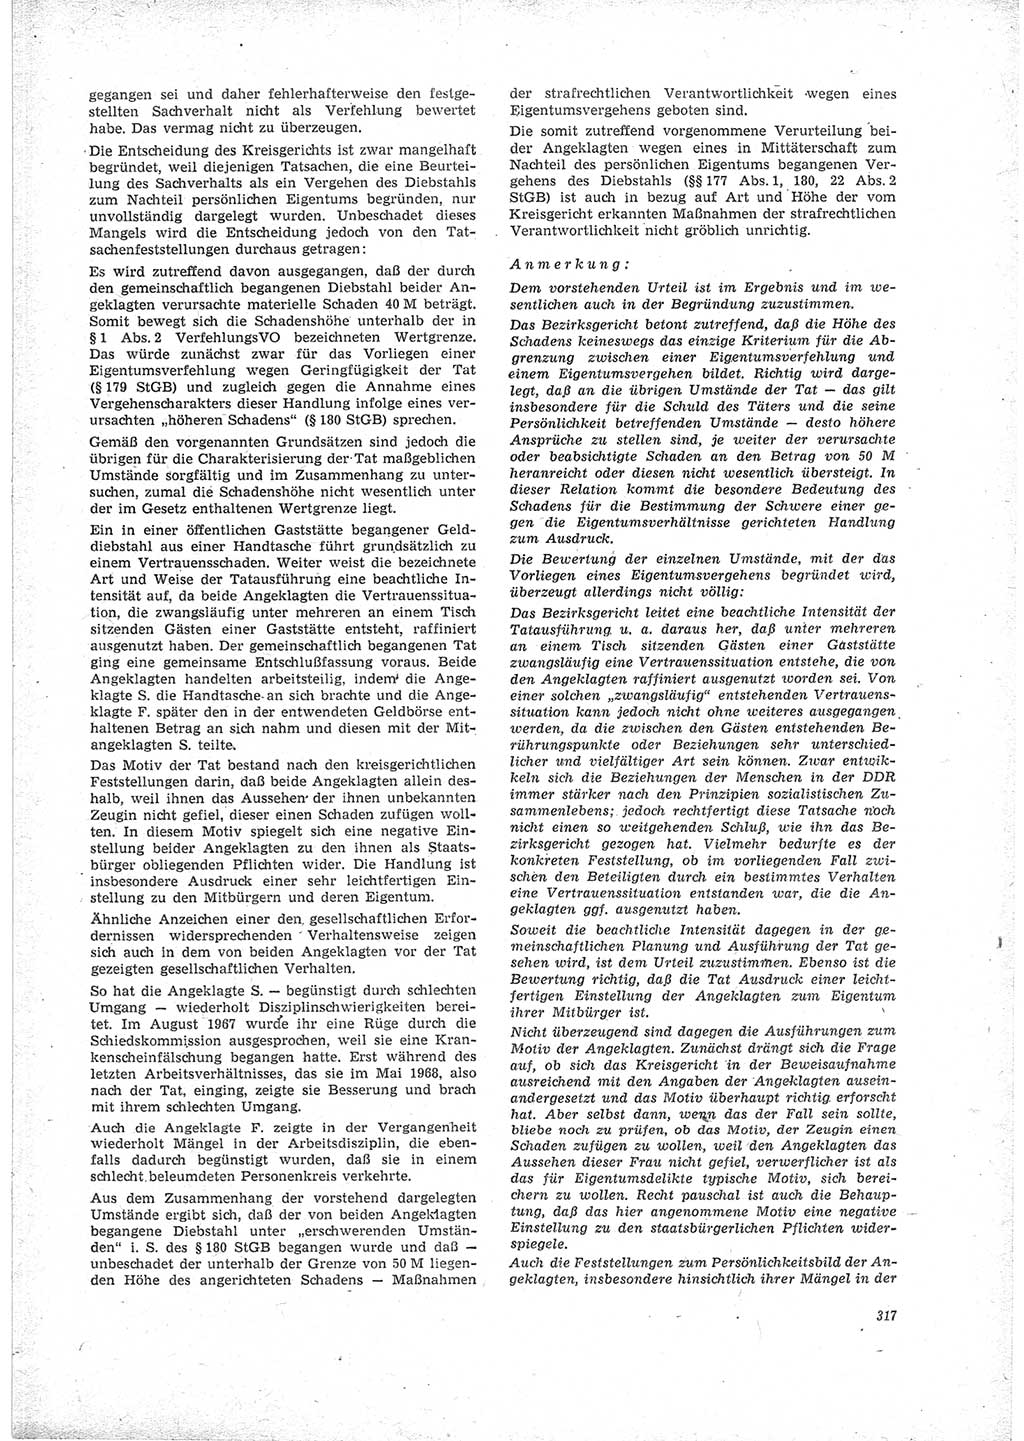 Neue Justiz (NJ), Zeitschrift für Recht und Rechtswissenschaft [Deutsche Demokratische Republik (DDR)], 23. Jahrgang 1969, Seite 317 (NJ DDR 1969, S. 317)